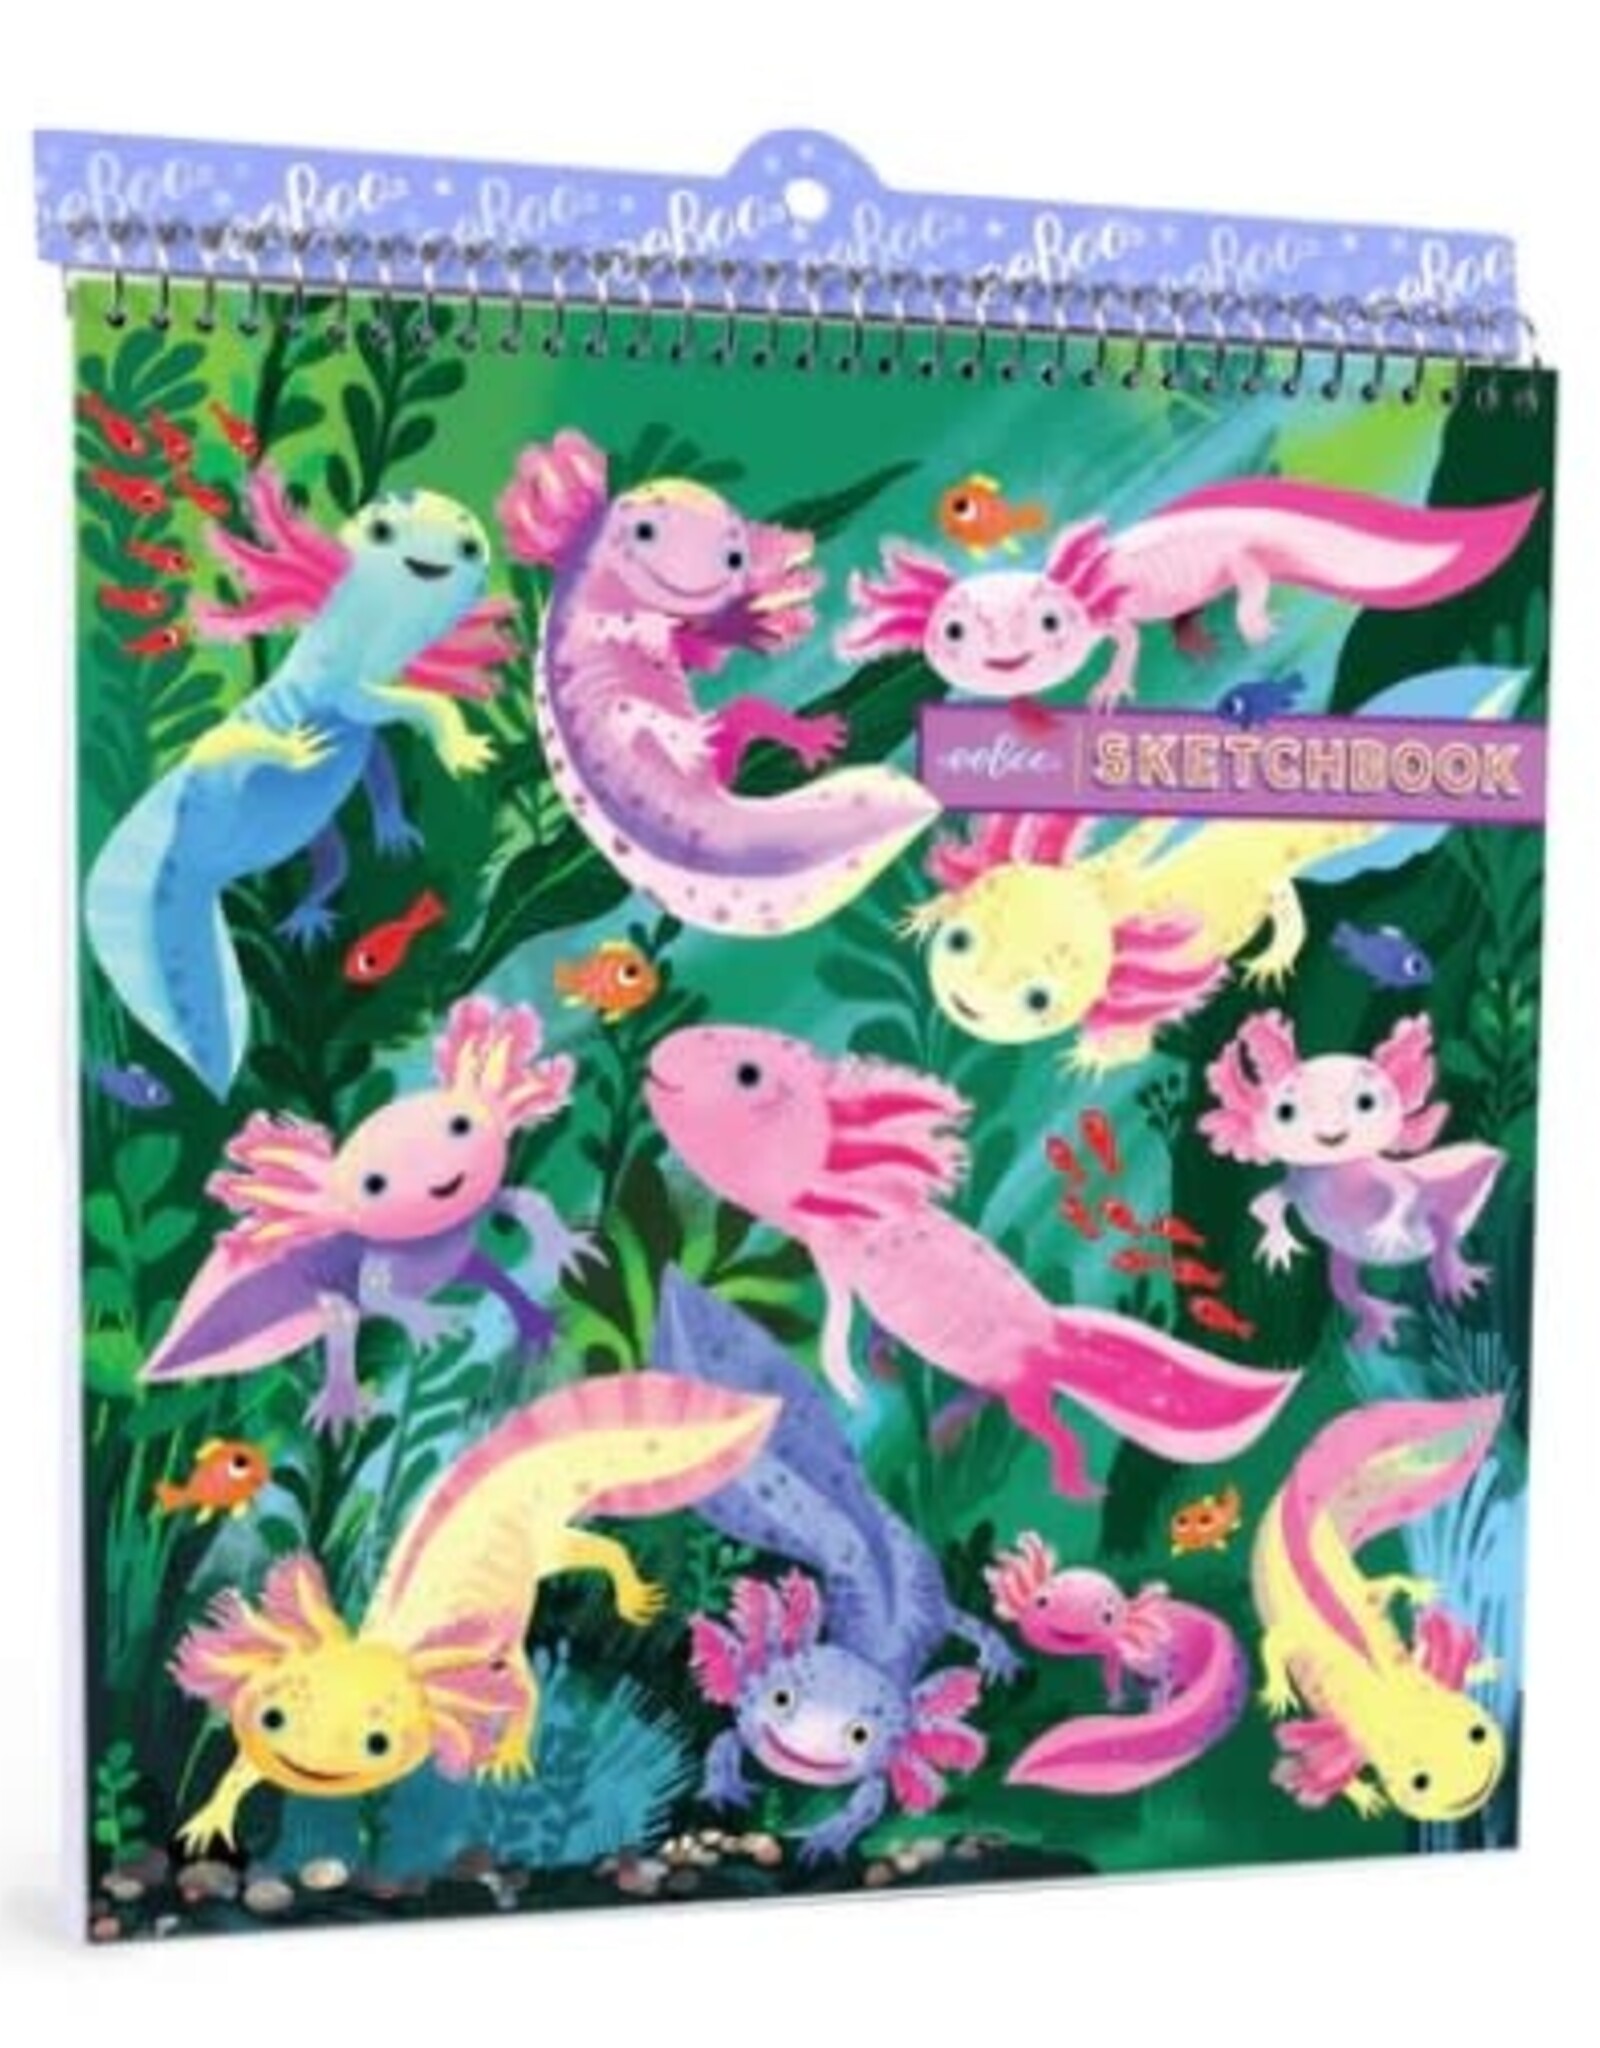 eeBoo Axolotl Square Sketchbook